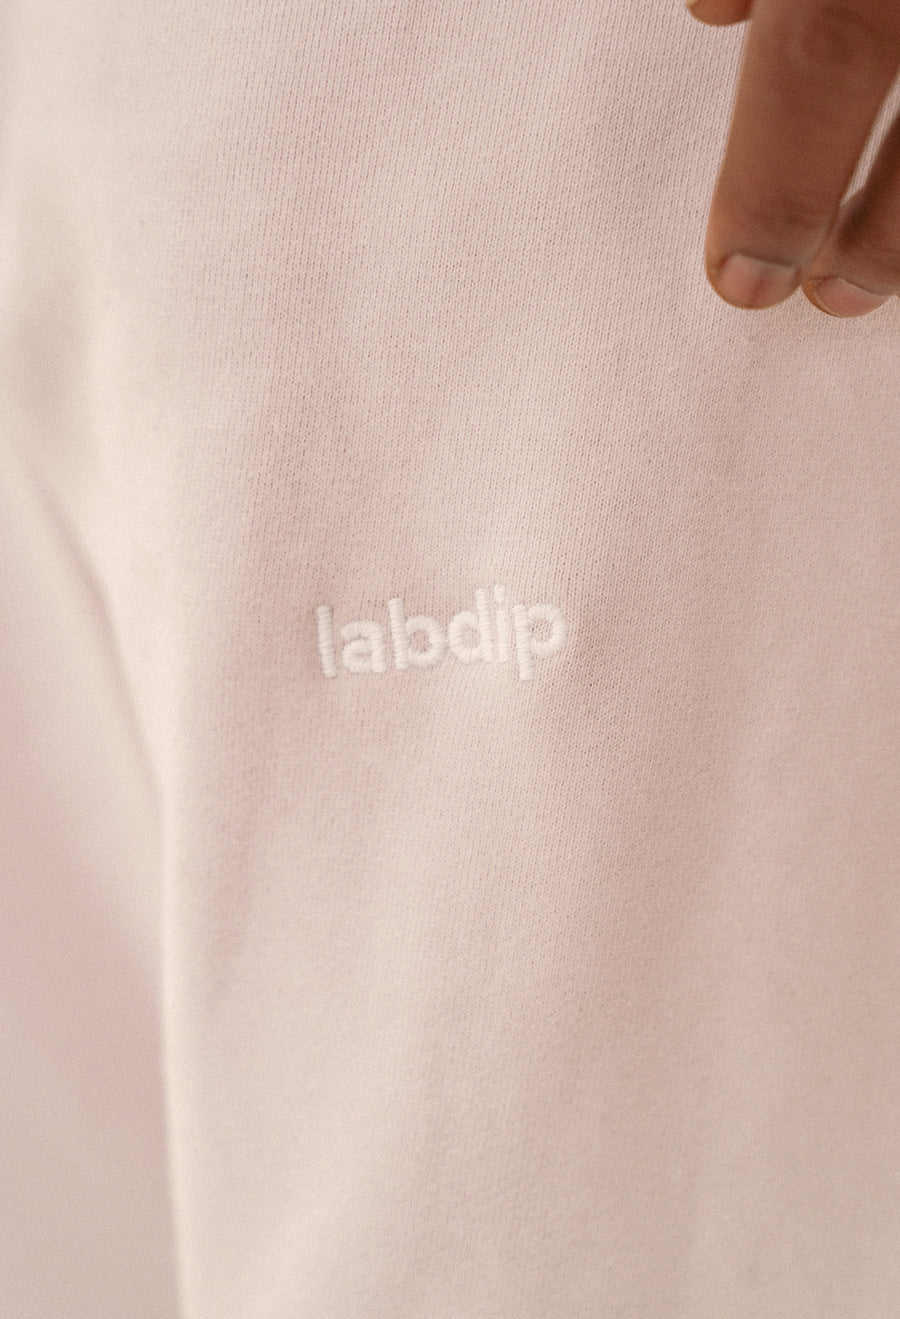 labdip Signature Sweatpant Vintage White